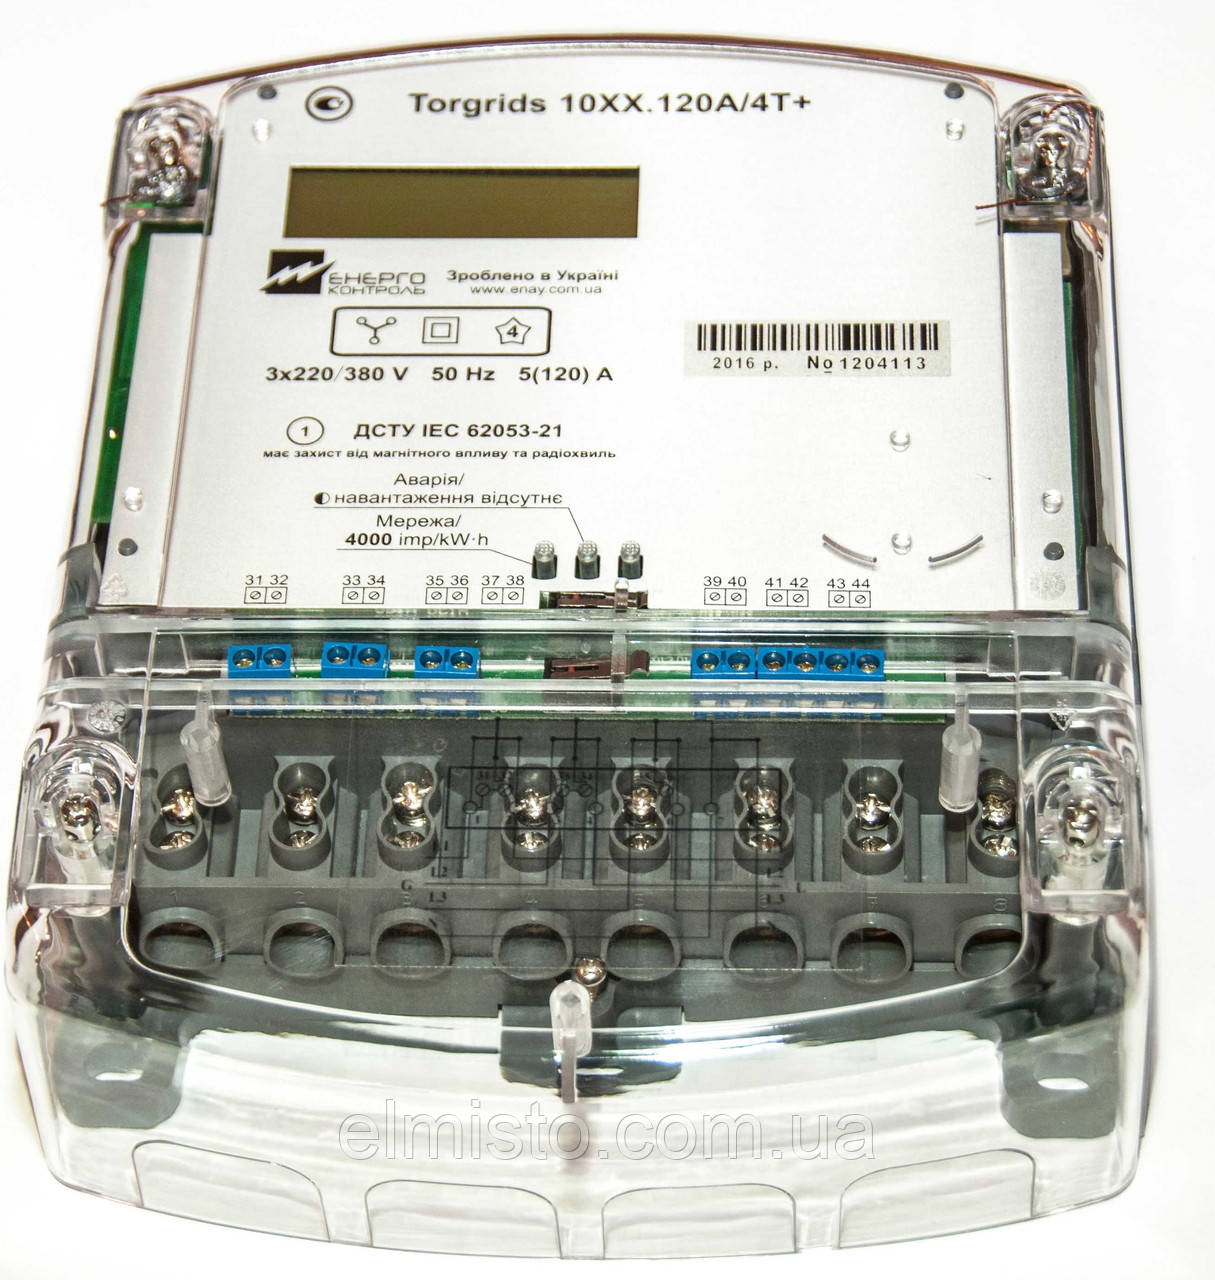 Электросчетчики трехфазные однотарифные Torgrids 1020.120A/4T+, продажа .